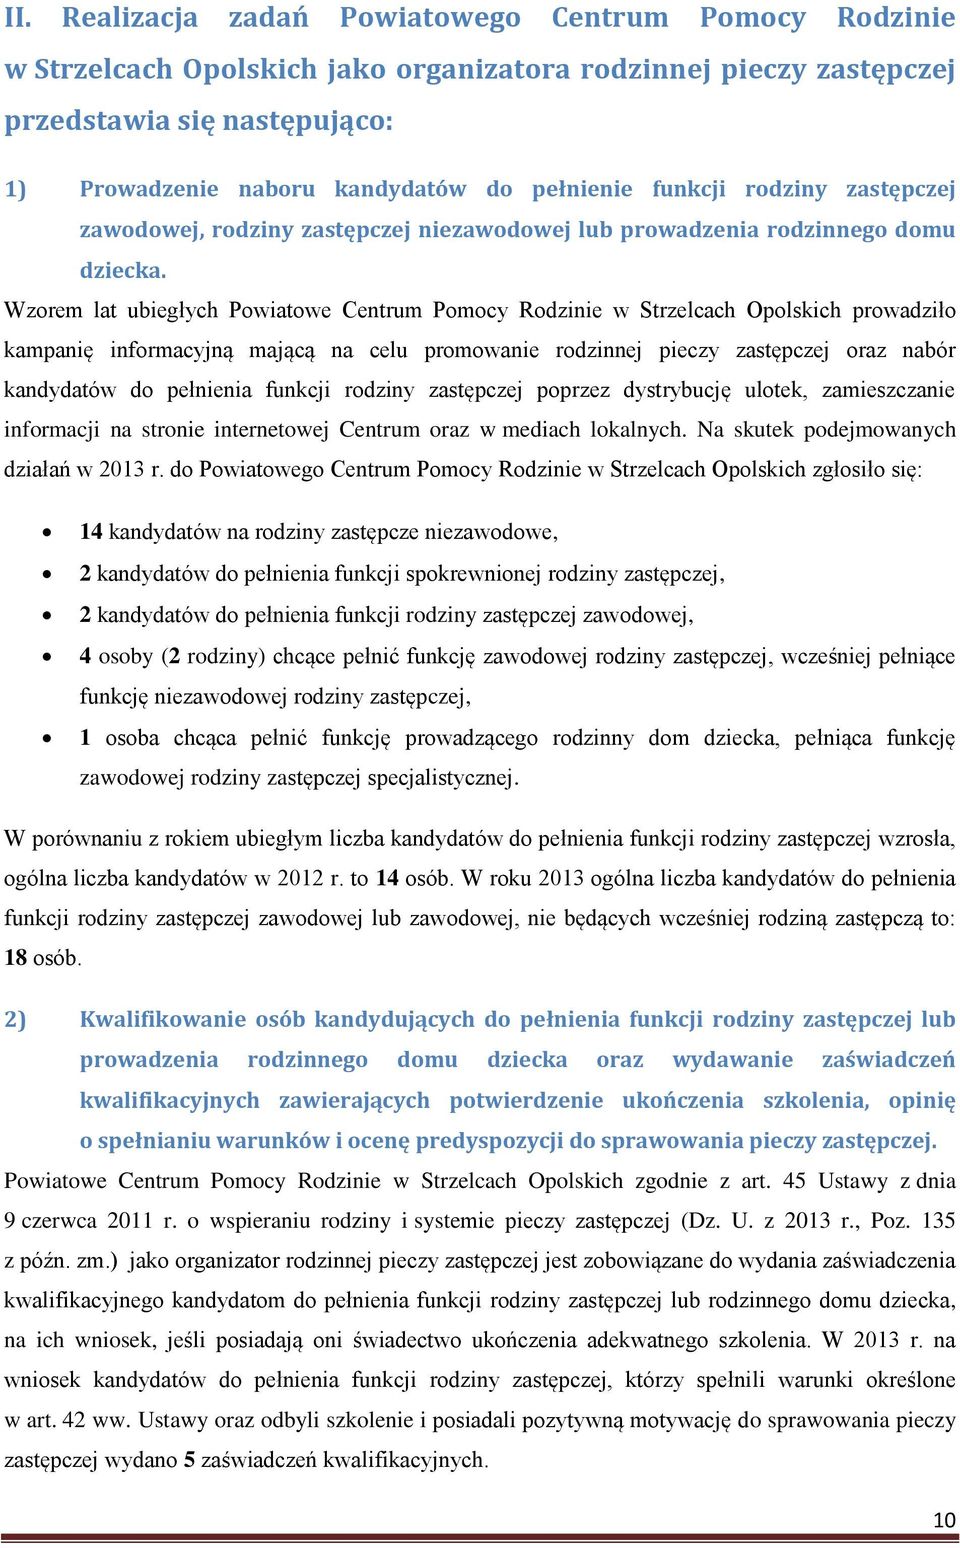 Wzorem lat ubiegłych Powiatowe Centrum Pomocy Rodzinie w Strzelcach Opolskich prowadziło kampanię informacyjną mającą na celu promowanie rodzinnej pieczy zastępczej oraz nabór kandydatów do pełnienia